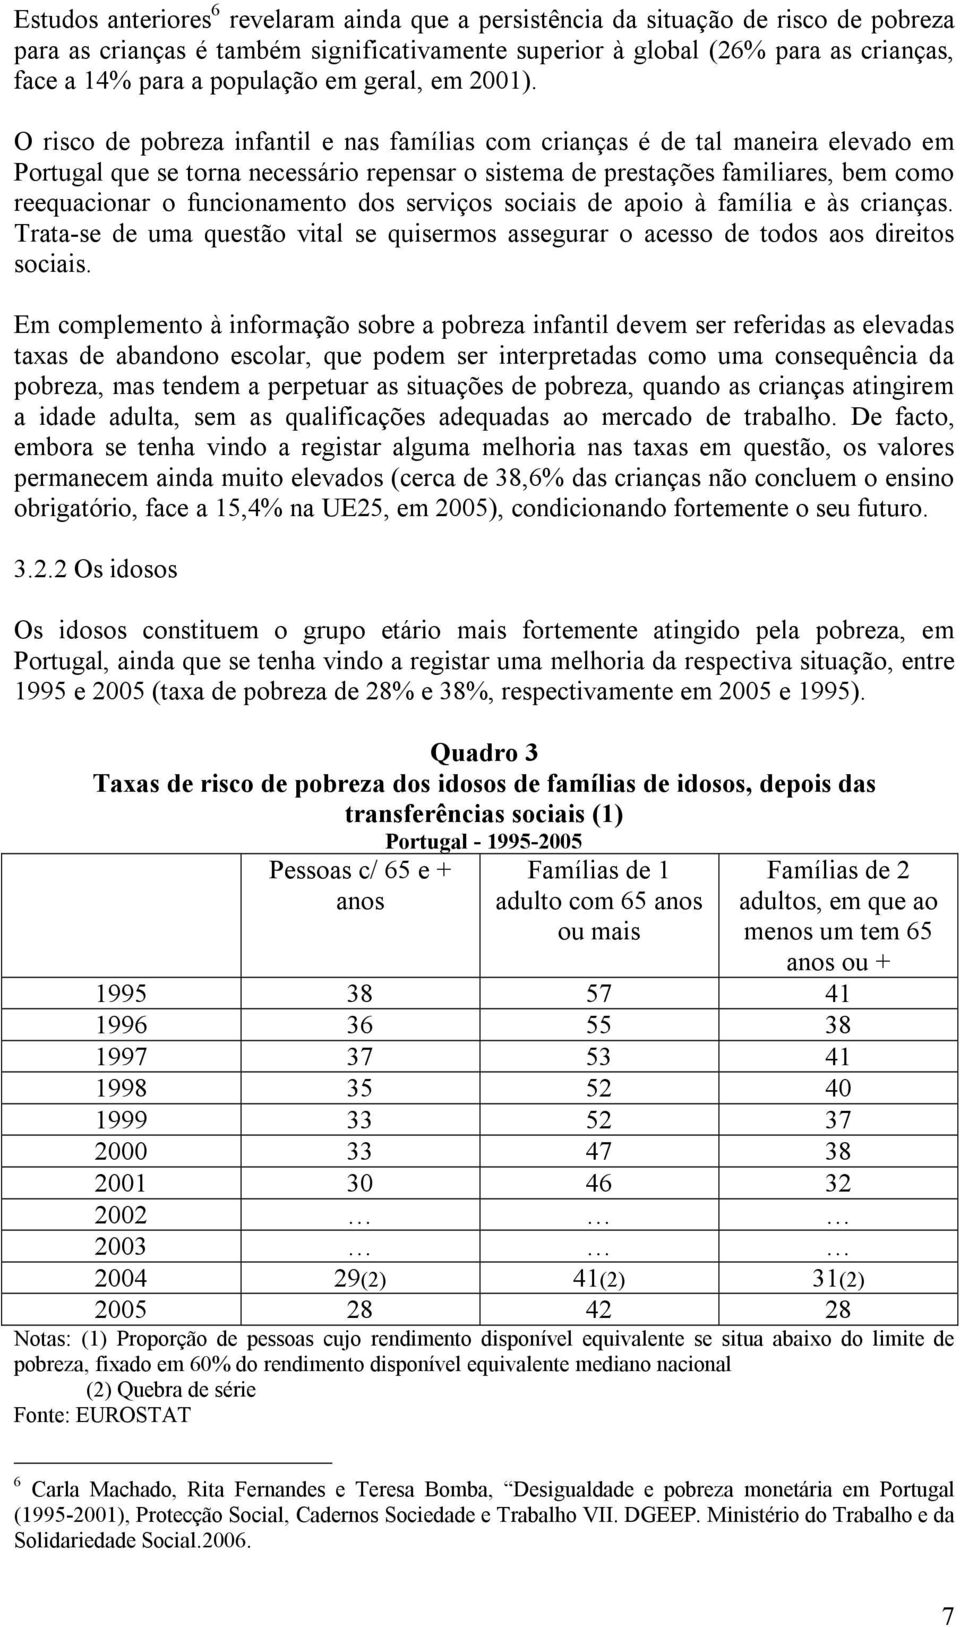 O risco de pobreza infantil e nas famílias com crianças é de tal maneira elevado em Portugal que se torna necessário repensar o sistema de prestações familiares, bem como reequacionar o funcionamento